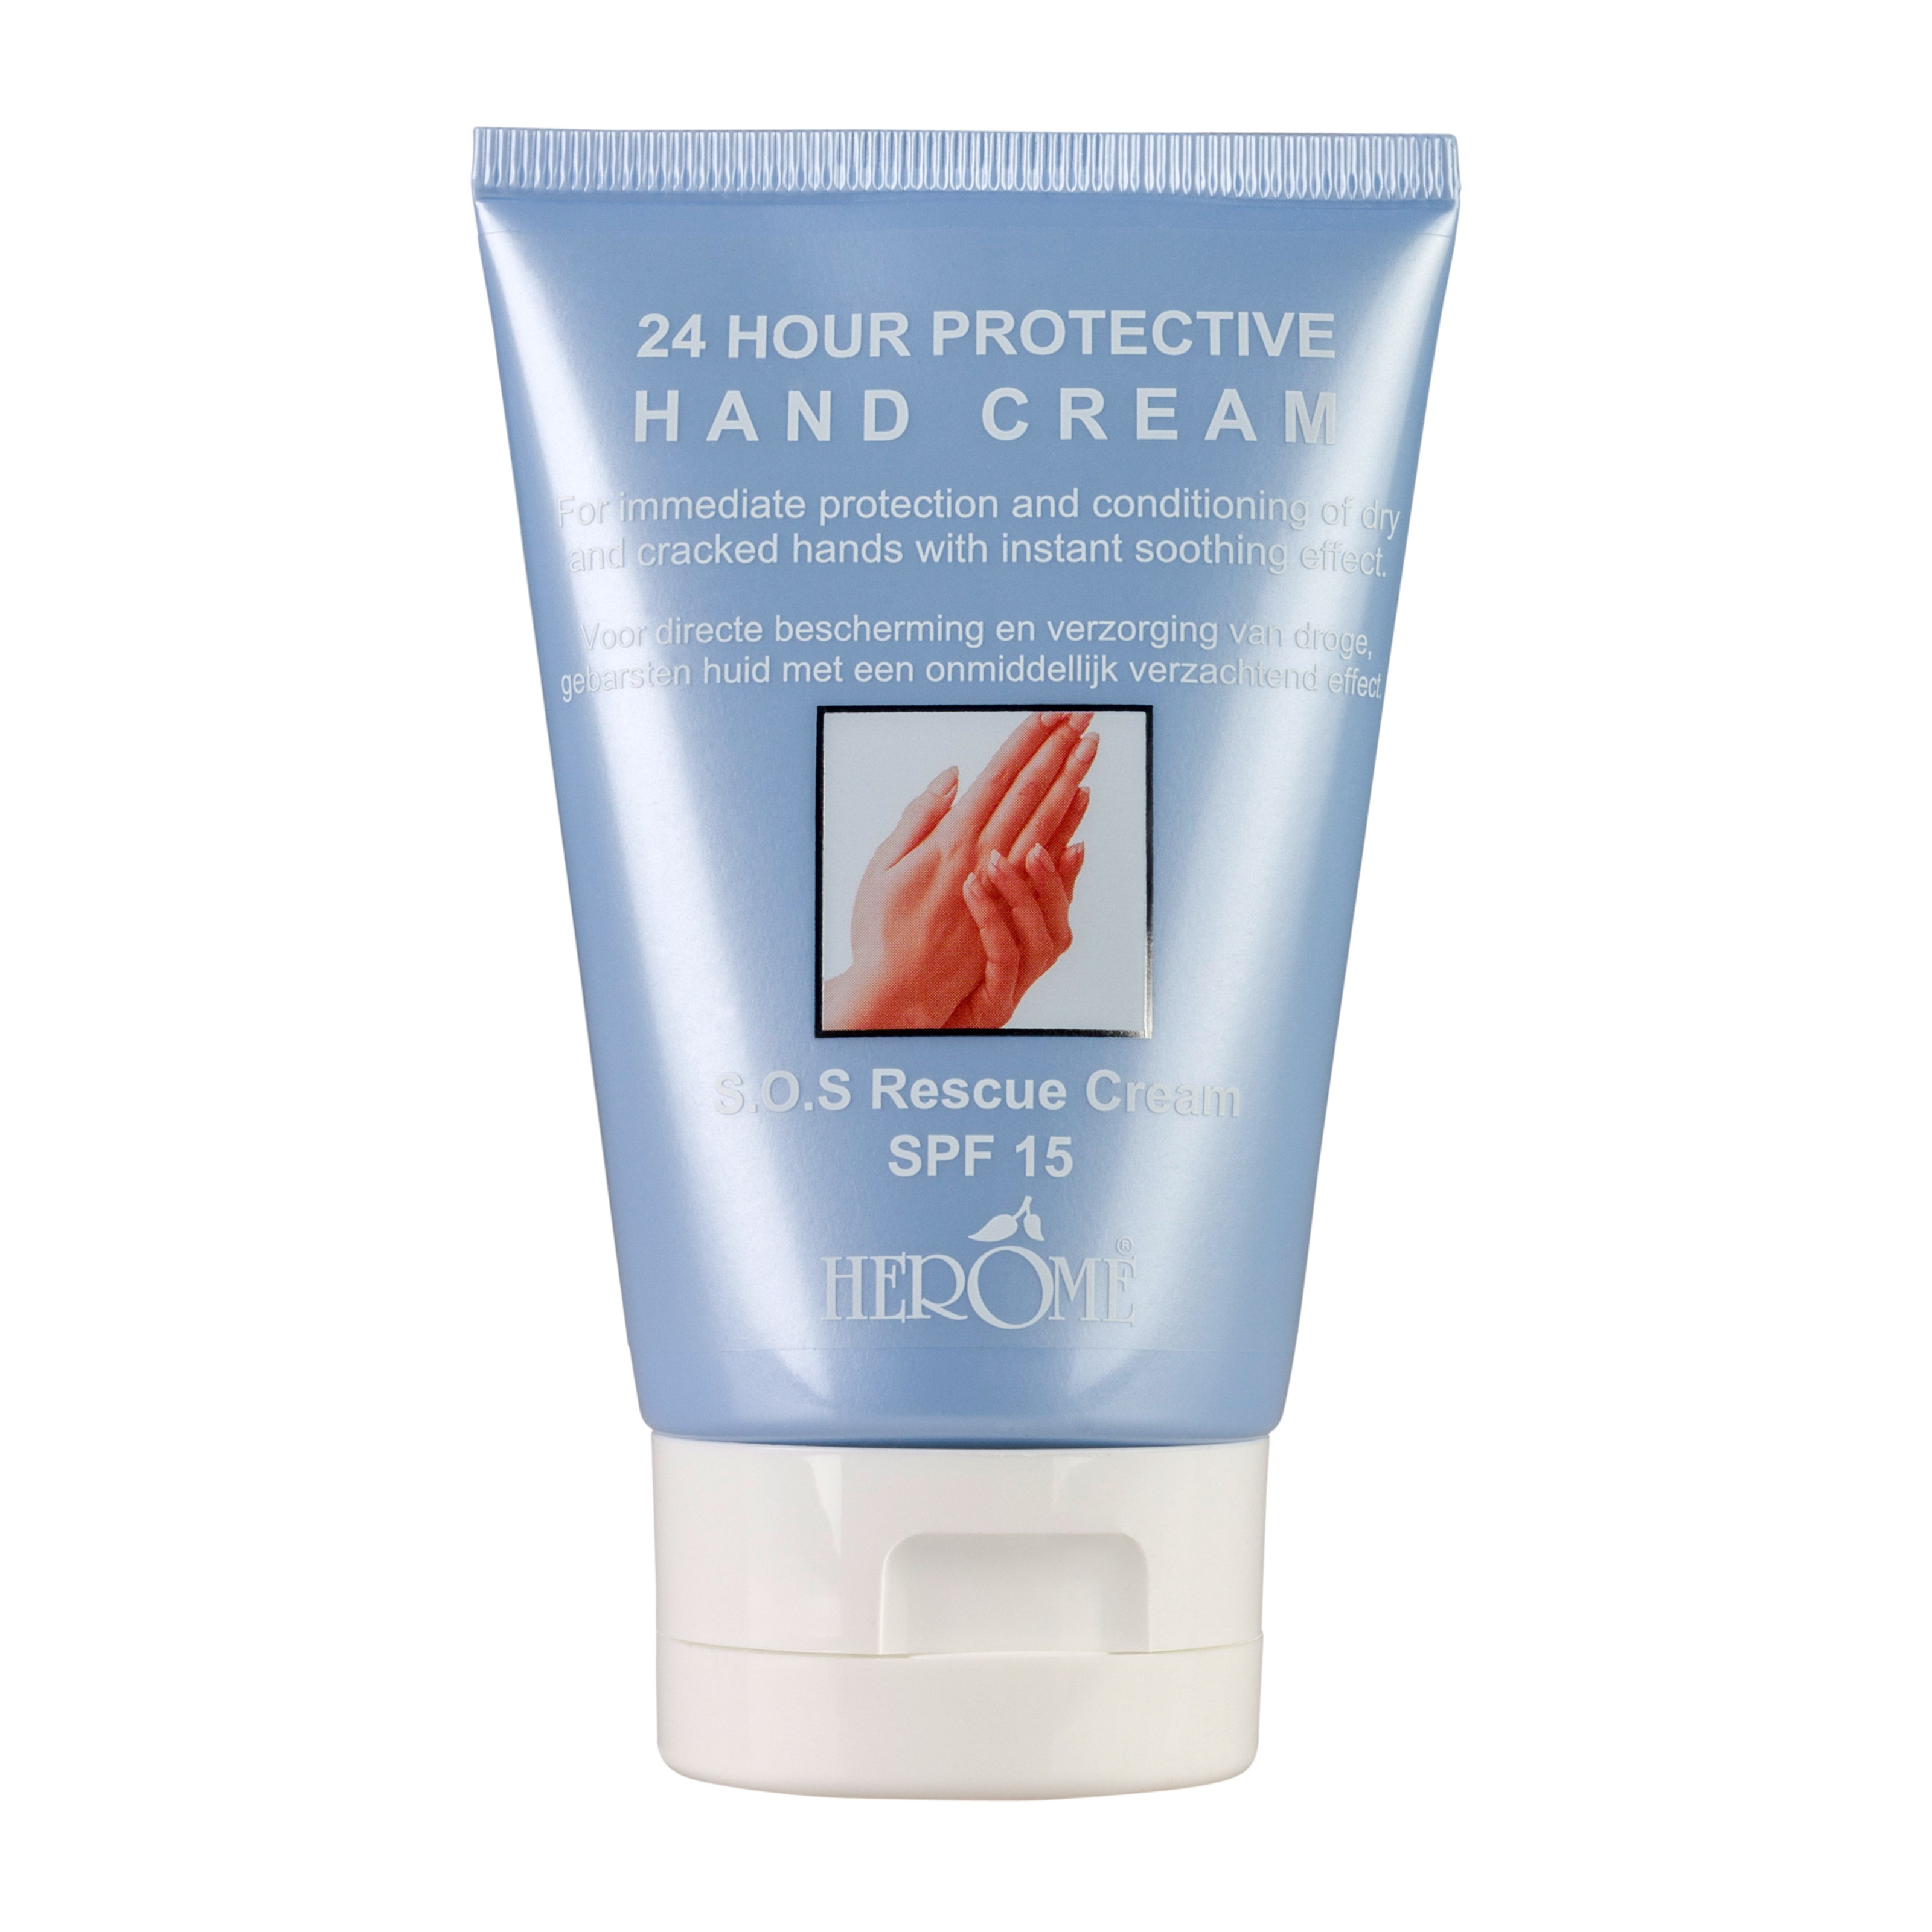 Bilde av Herome 24 Hour Protective Hand Cream 80 Ml